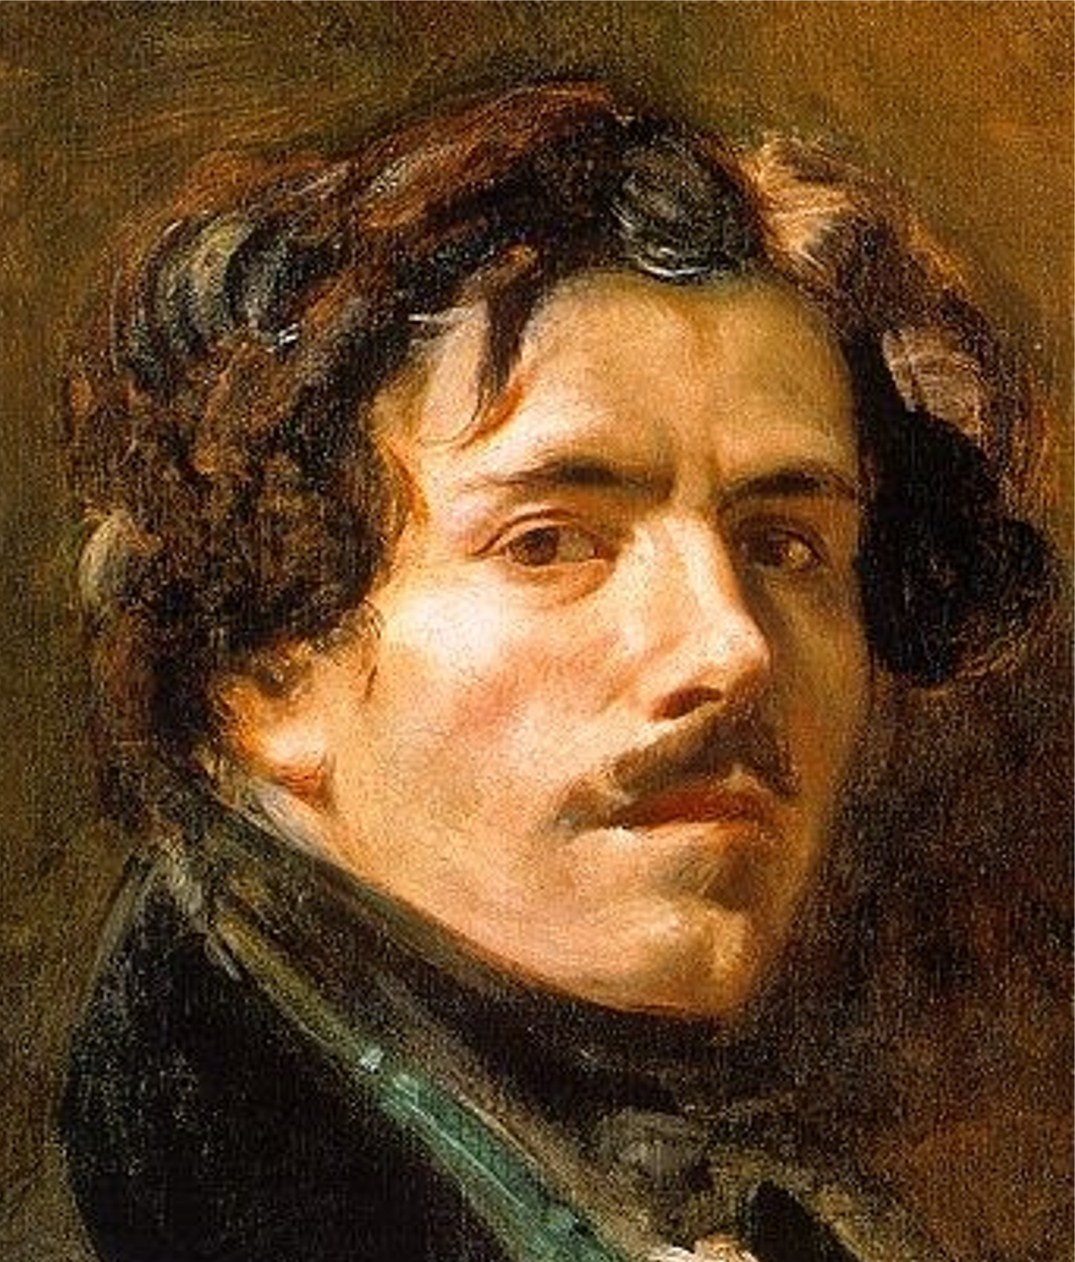 Eugene+Delacroix-1798-1863 (256).jpg